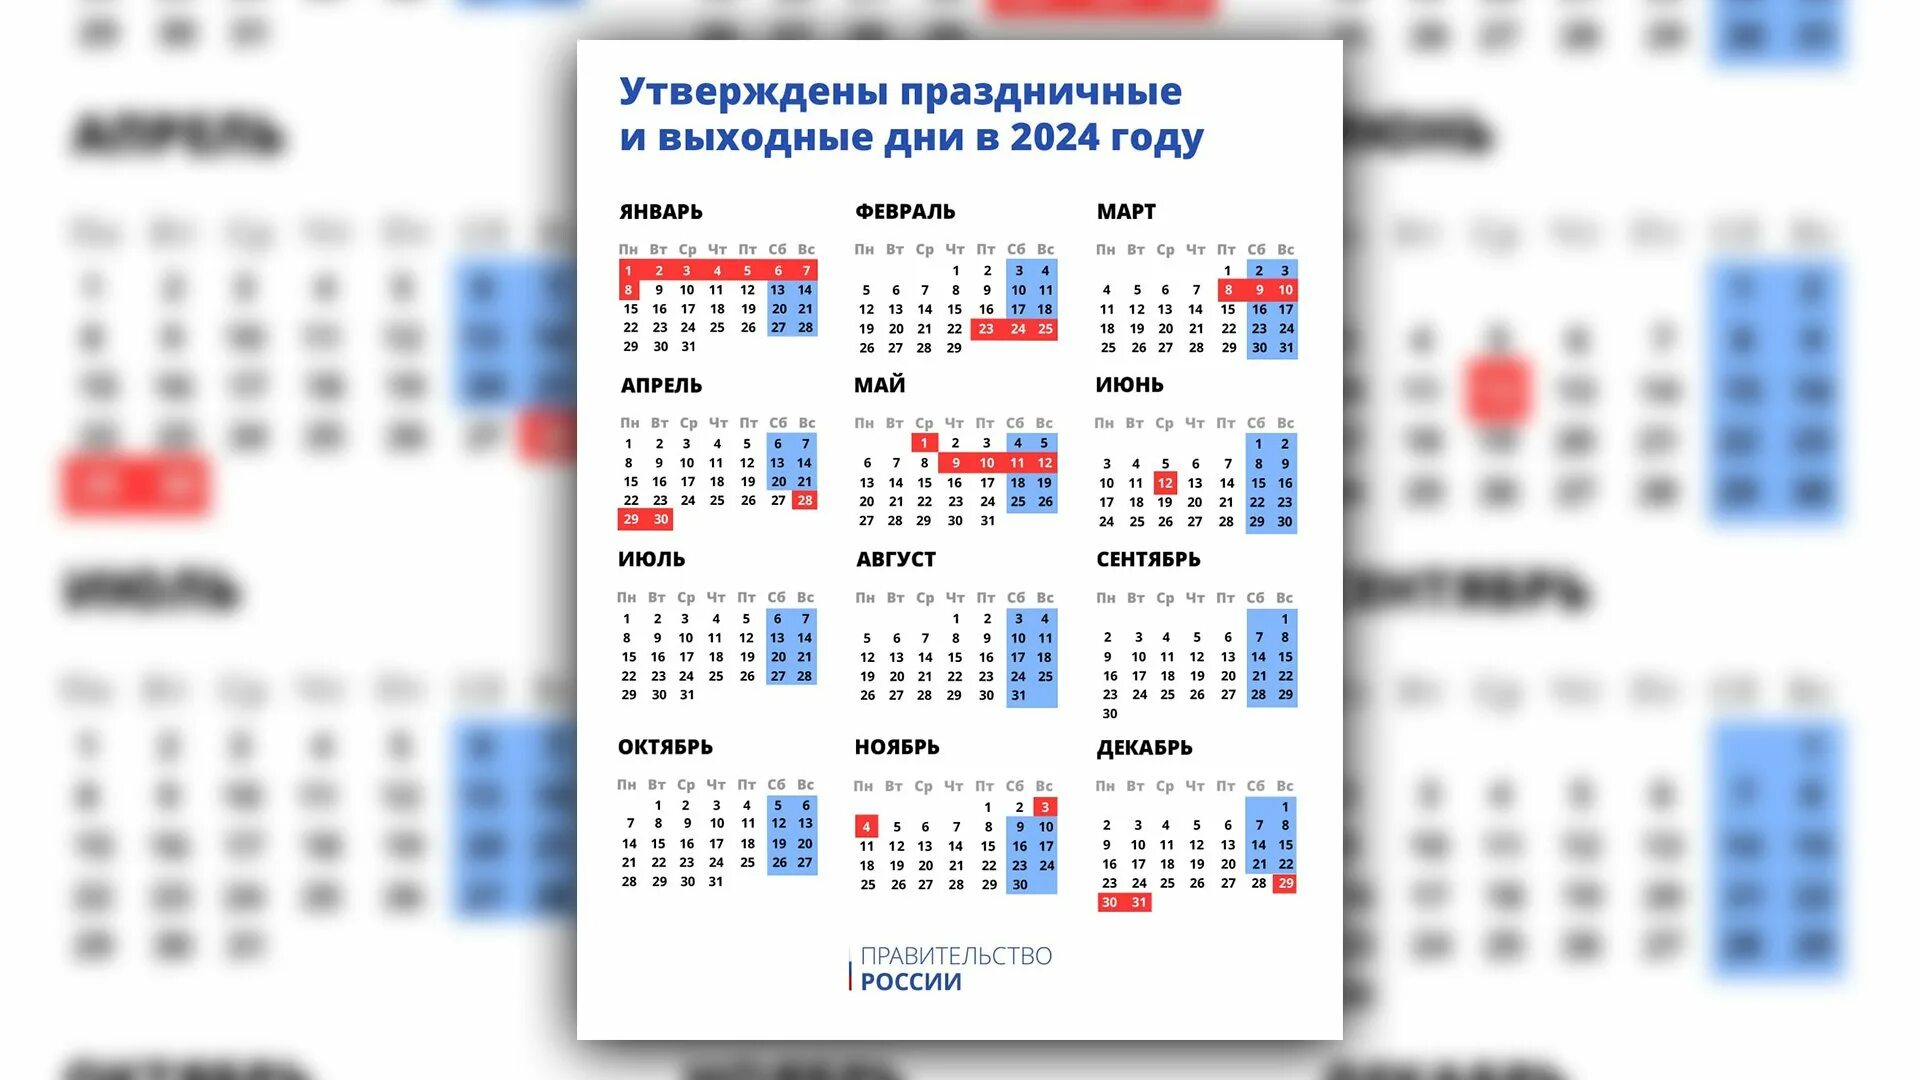 Праздничные дни дни 2024. Праздничные дни в 2024 году в России. Выходные и праздничные дни в 2024 году. Выходные дни в этом году в 2024.